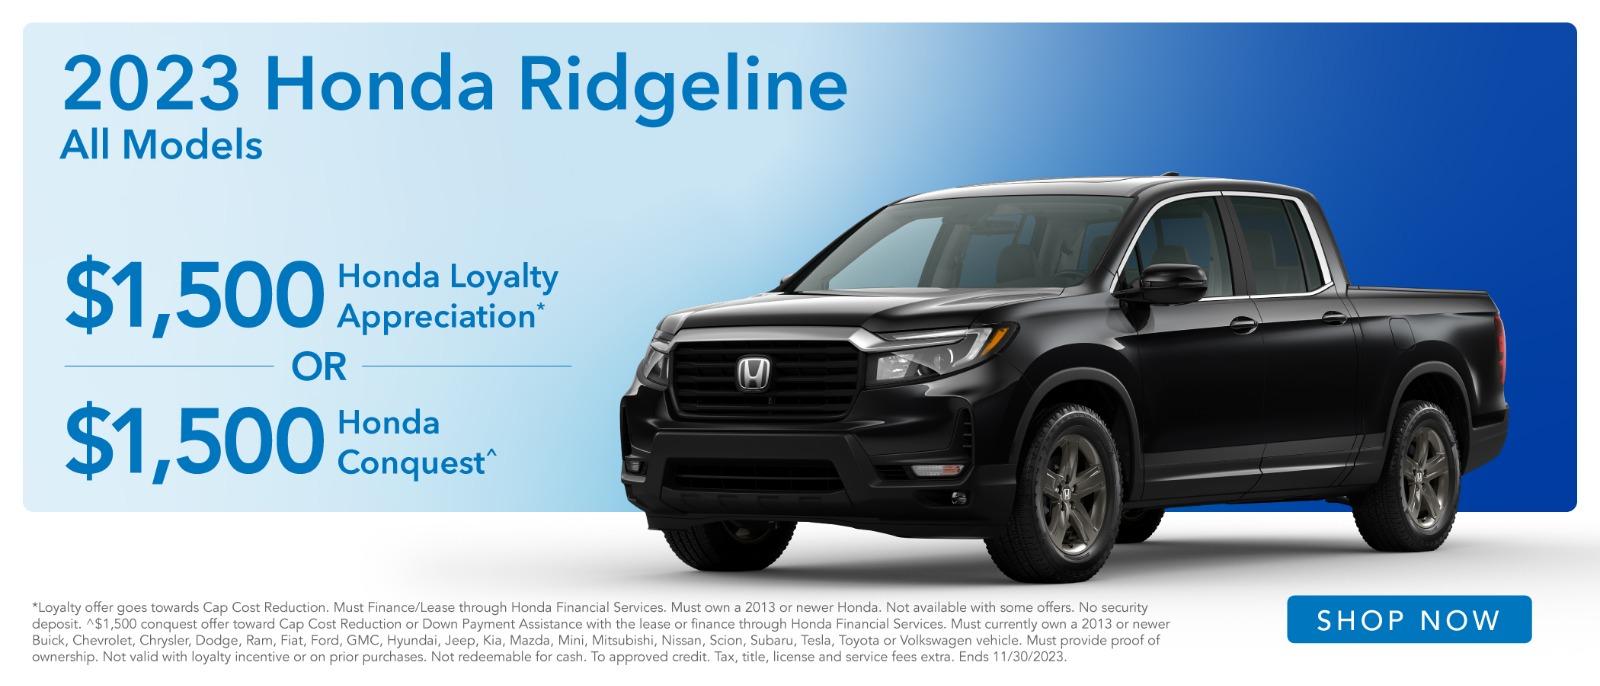 2023 Honda Ridgeline $1500 Loyalty Appreciation or $1,500 Honda Conquest